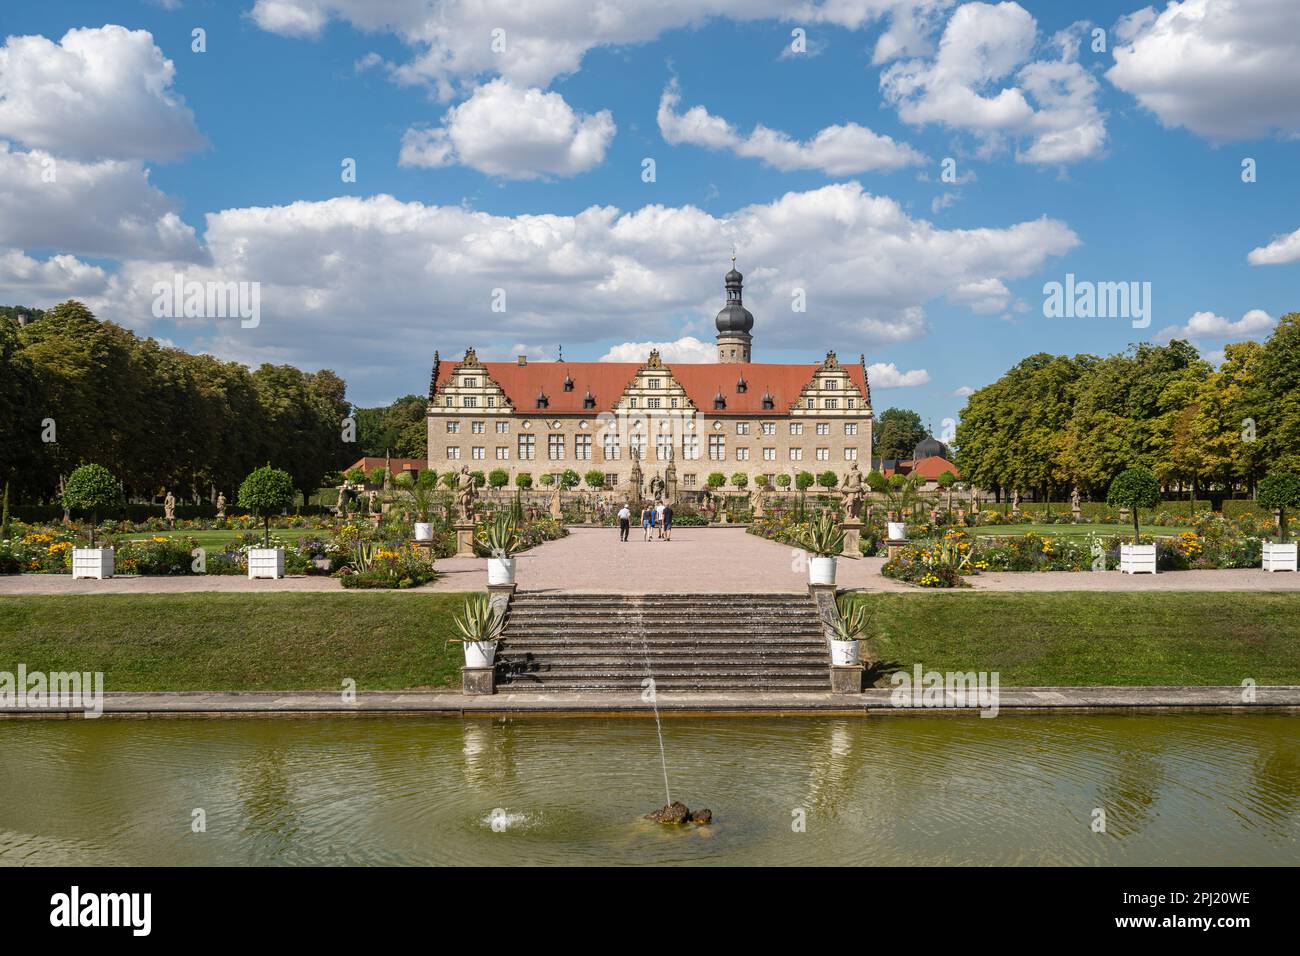 Blick auf das Schloss Weikersheim, umgeben von einem wunderschönen Park und an der berühmten Romantischen Straße gelegen Stockfoto